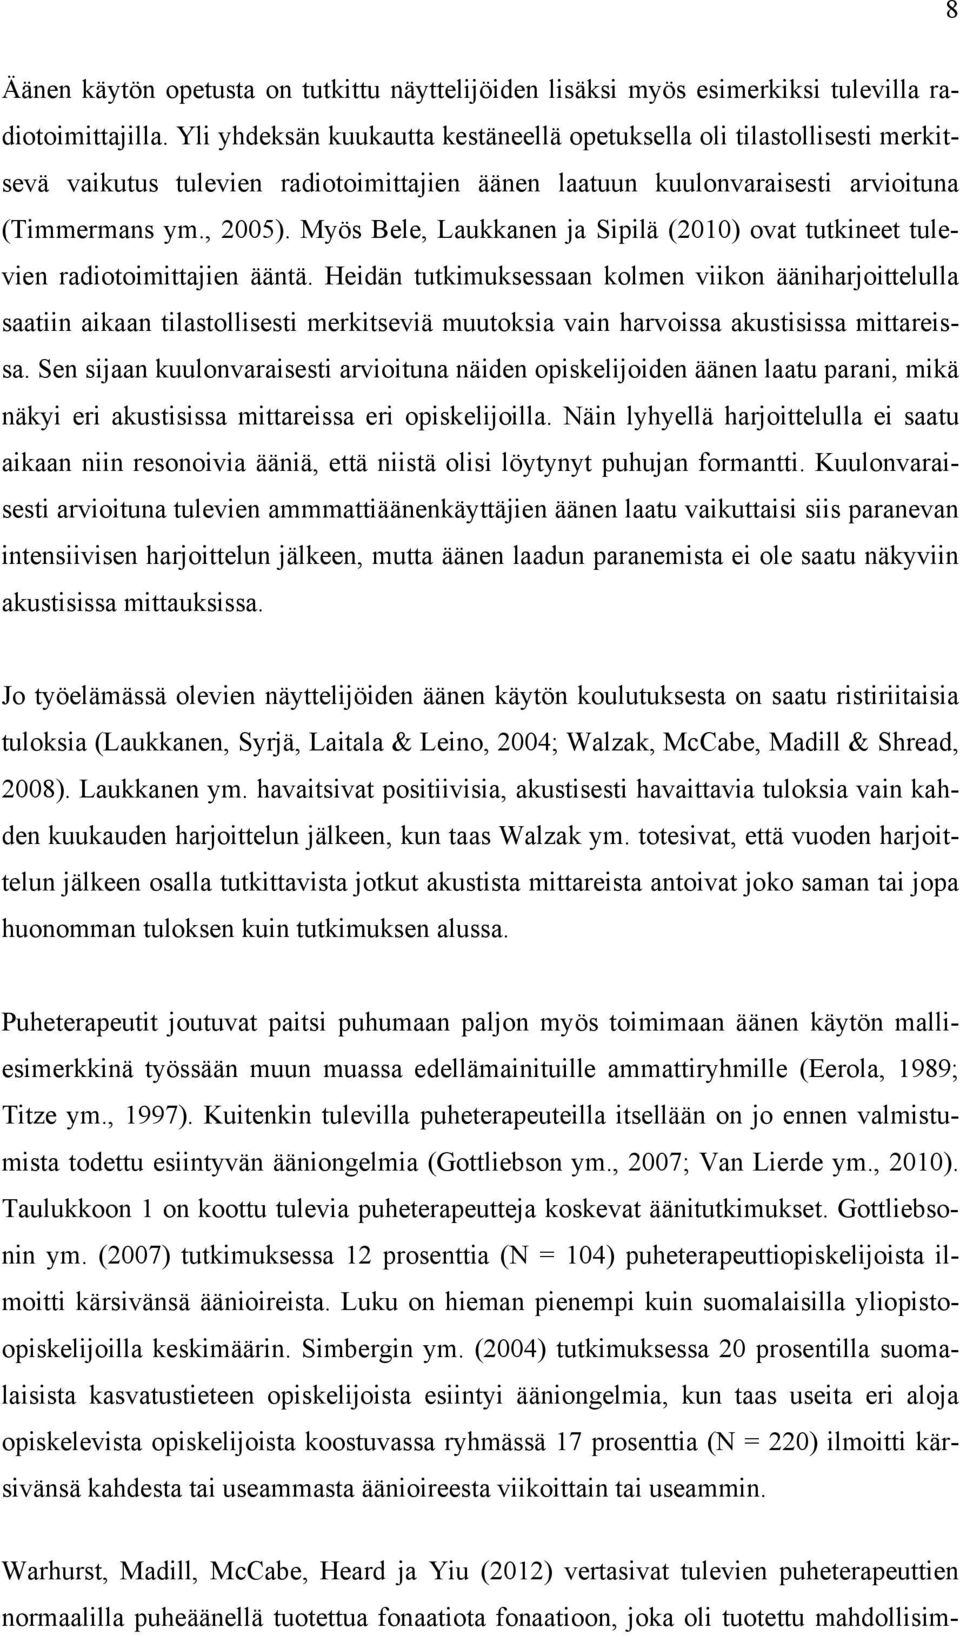 Myös Bele, Laukkanen ja Sipilä (2010) ovat tutkineet tulevien radiotoimittajien ääntä.